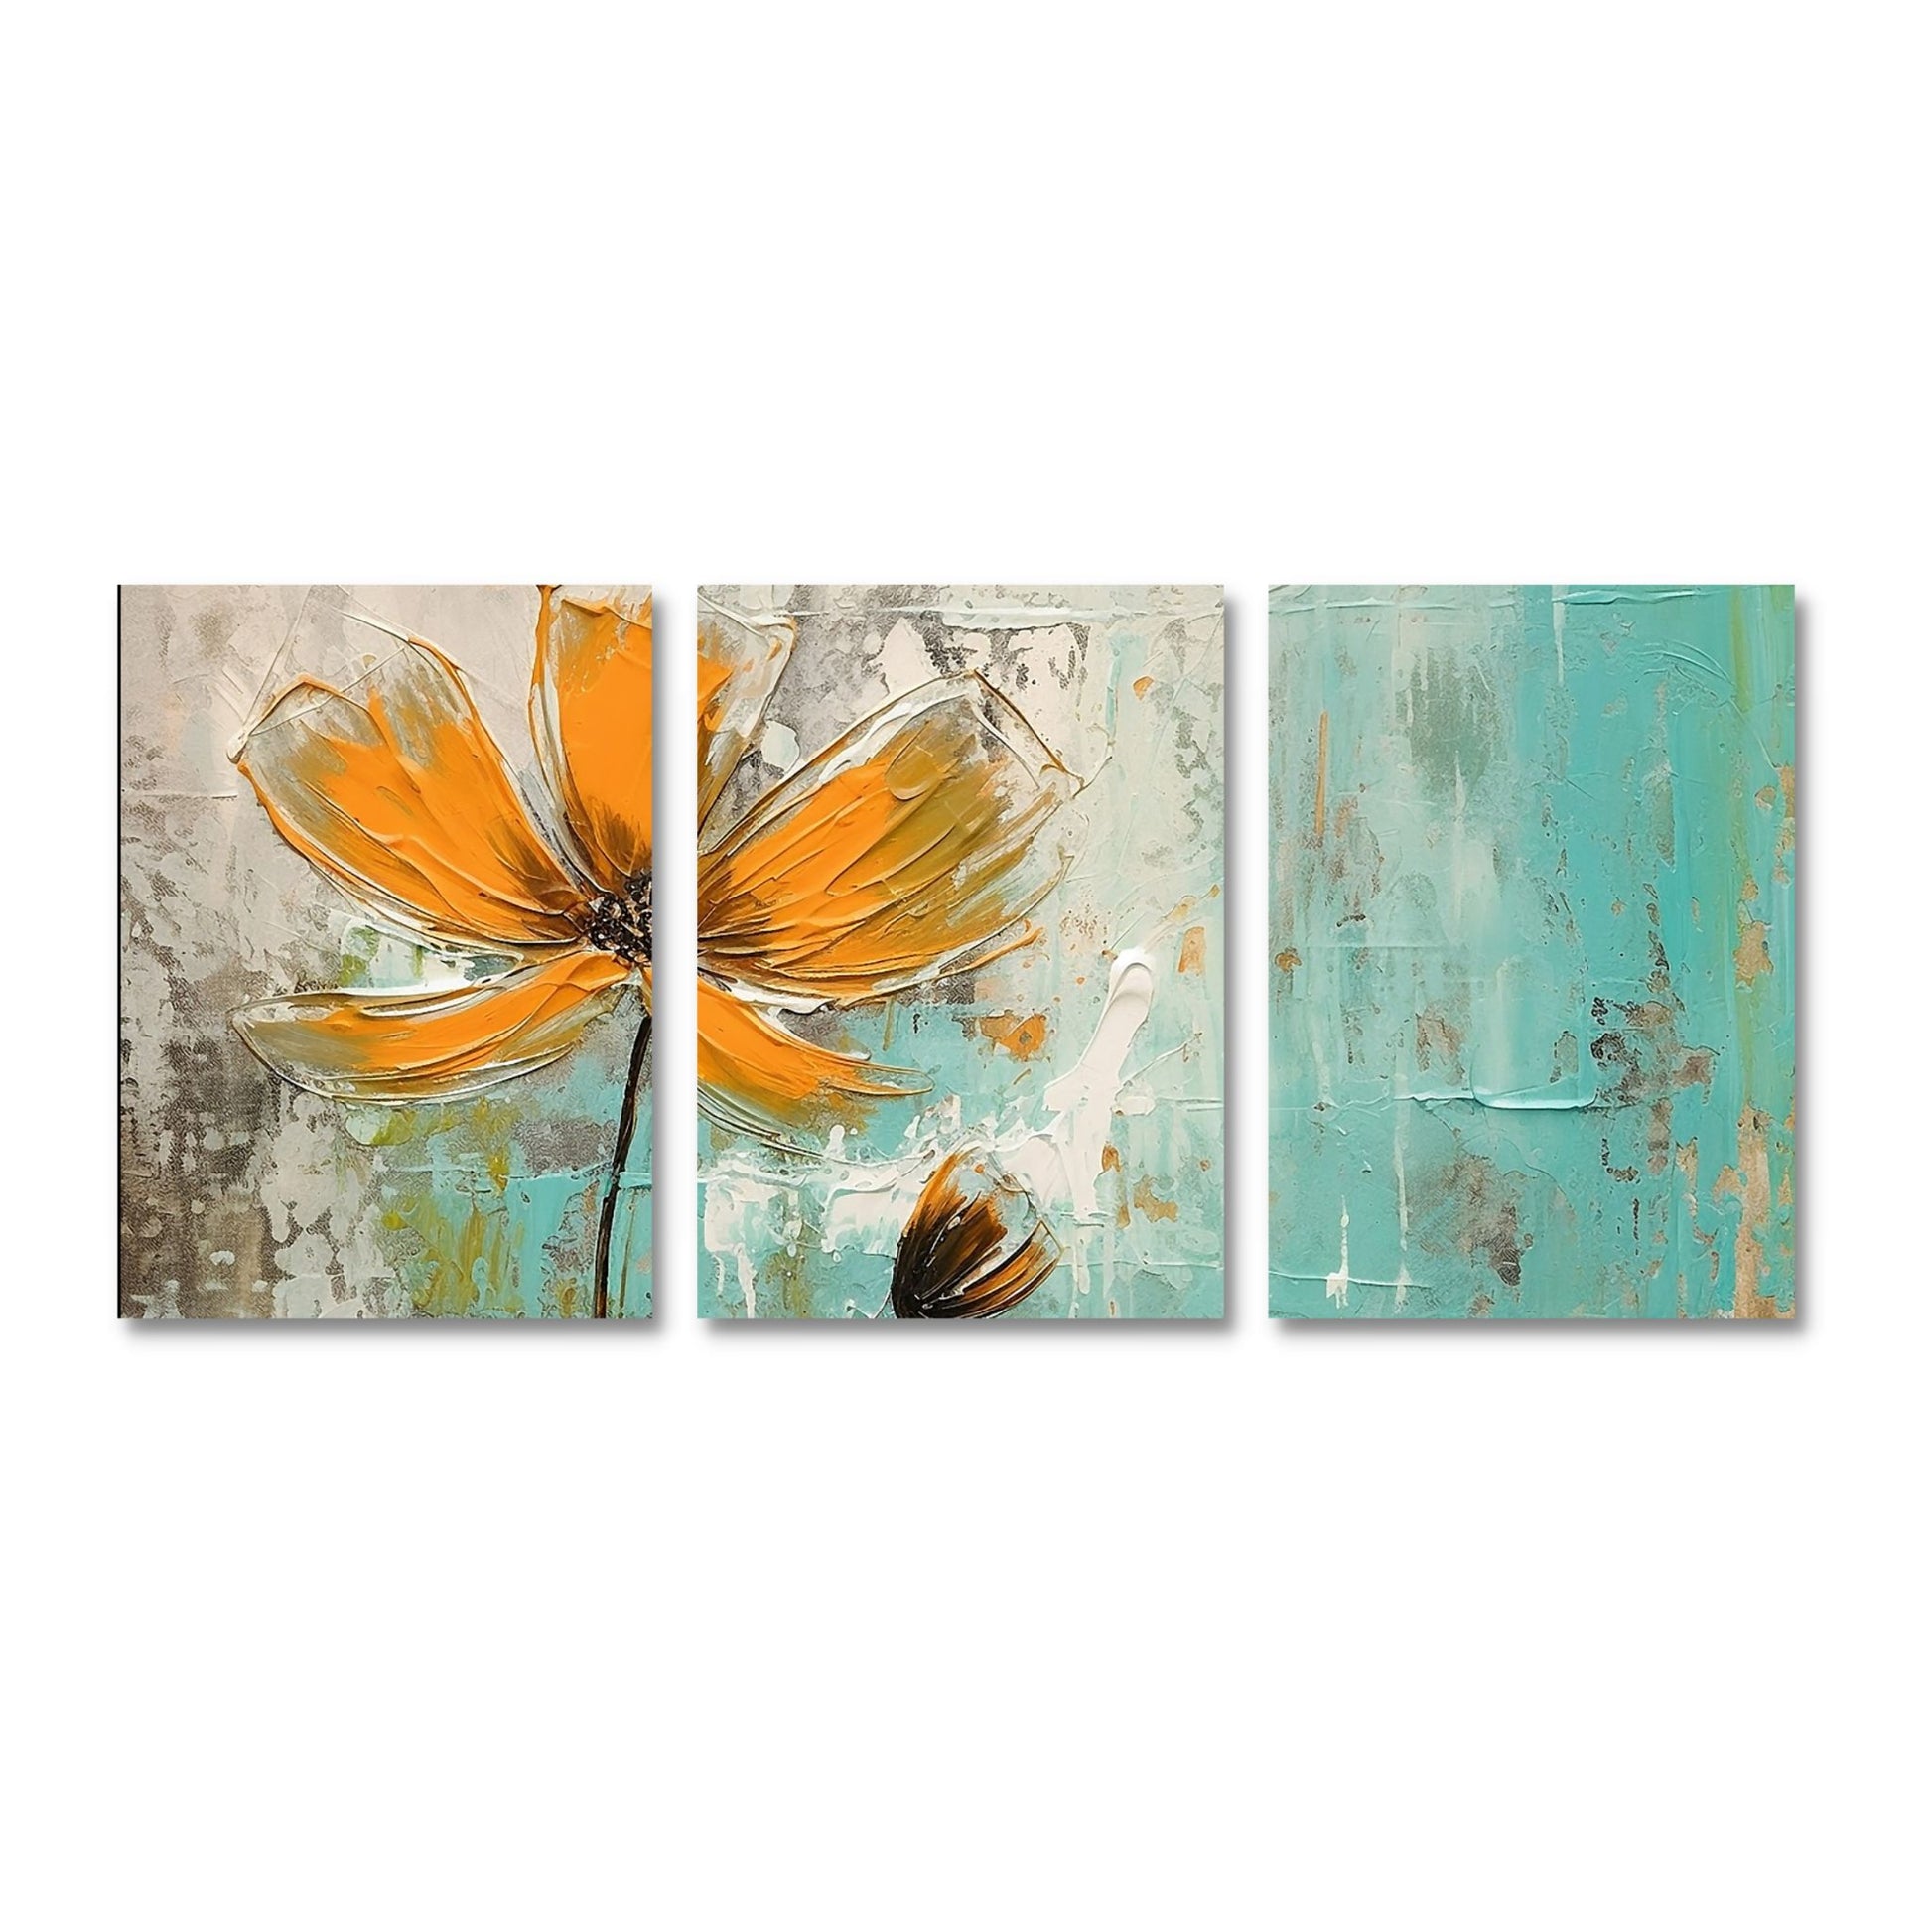 Abstrakt maleri som består av 3 stk. grafiske print på lerret. Motivet består av oransje blomster som danser på en beroligende bakgrunn av brunt,  beige og turkis..